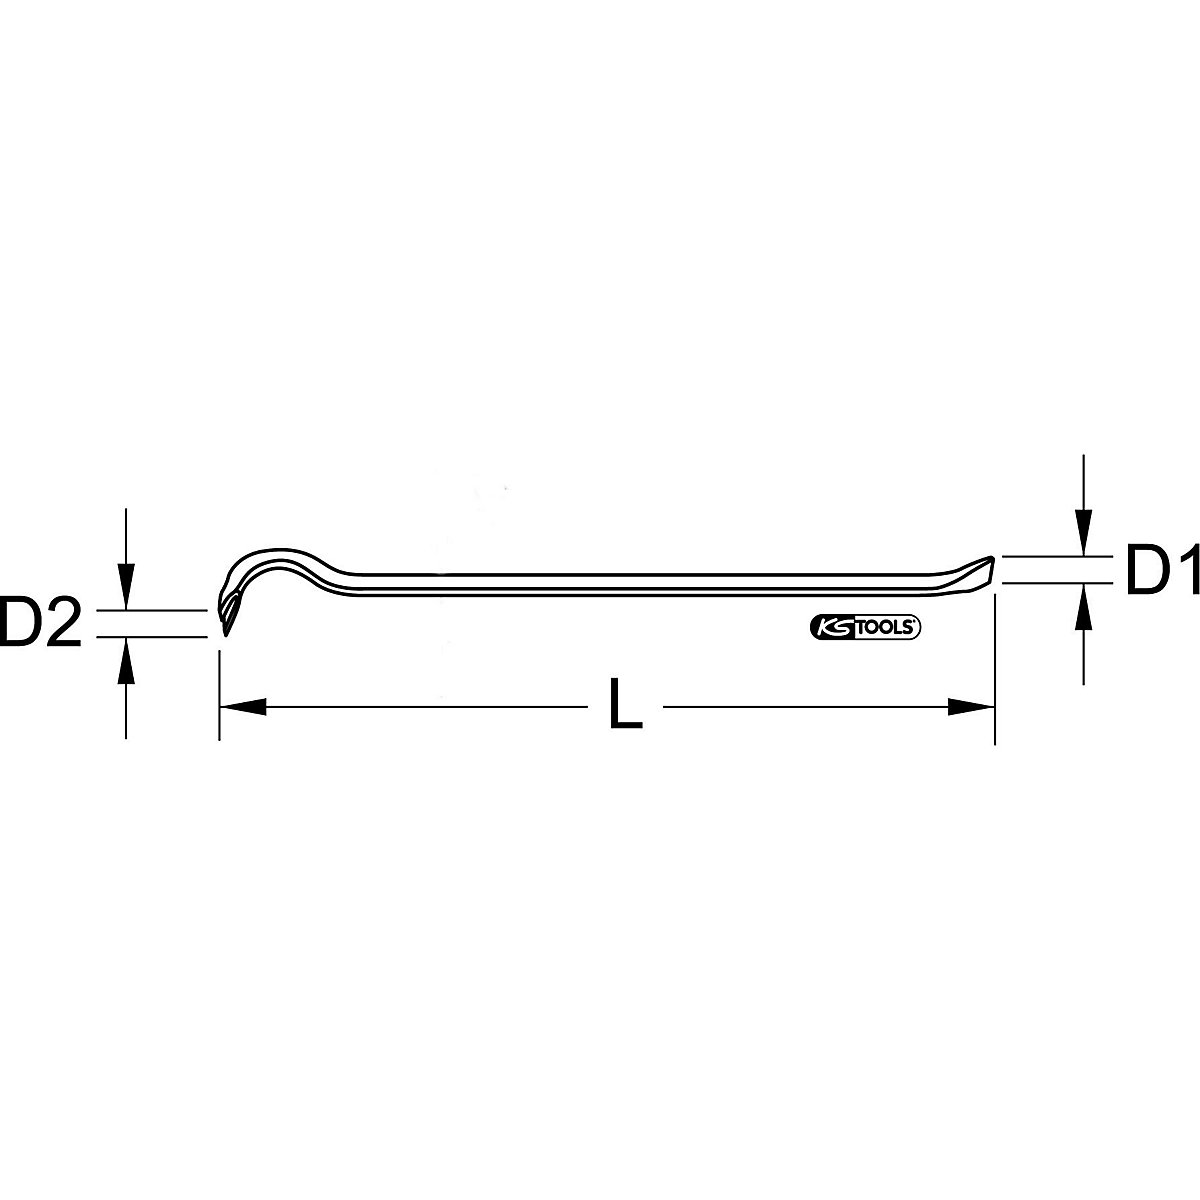 Palanca para sacar clavos – KS Tools (Imagen del producto 2)-1